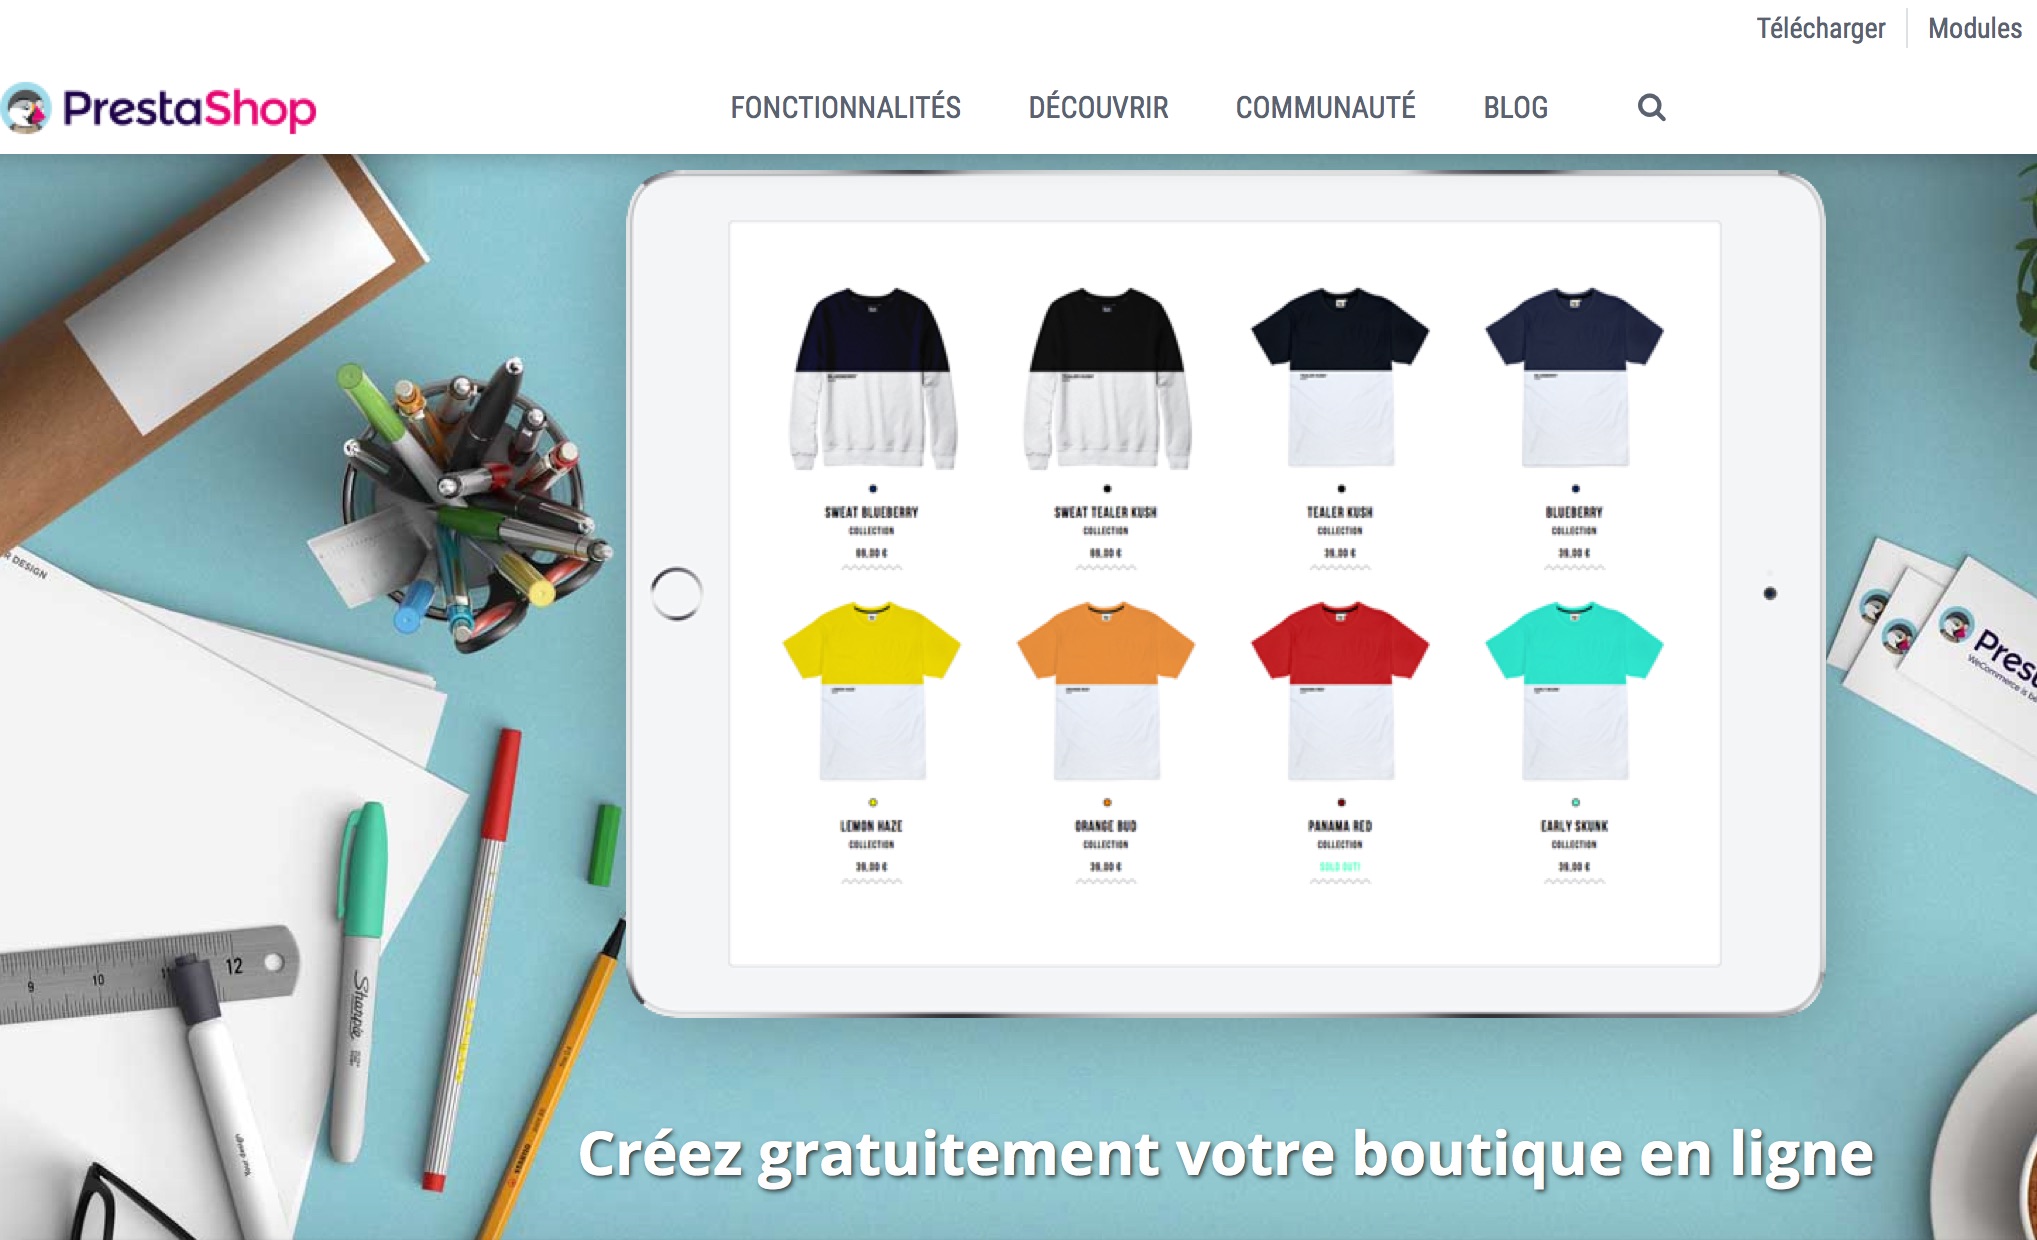 Prestashop, une pépite française du net qui permet de créer son propre site marchand en ligne